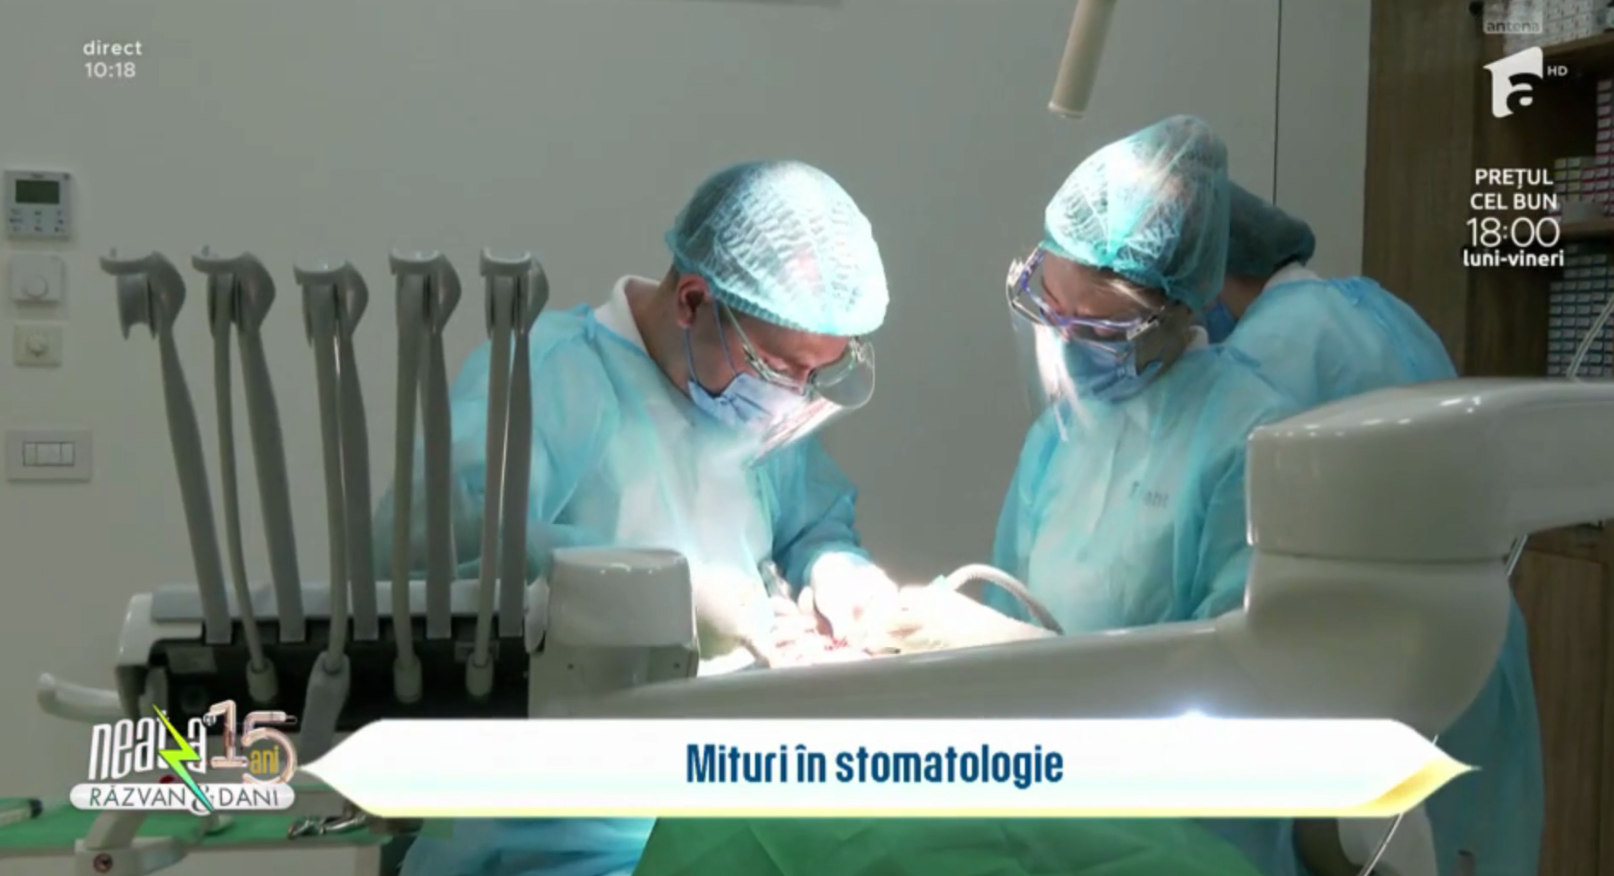 Dr Cazacu Corrado vorbește despre mituri în stomatologie la „Neatza cu Răzvan și Dani”